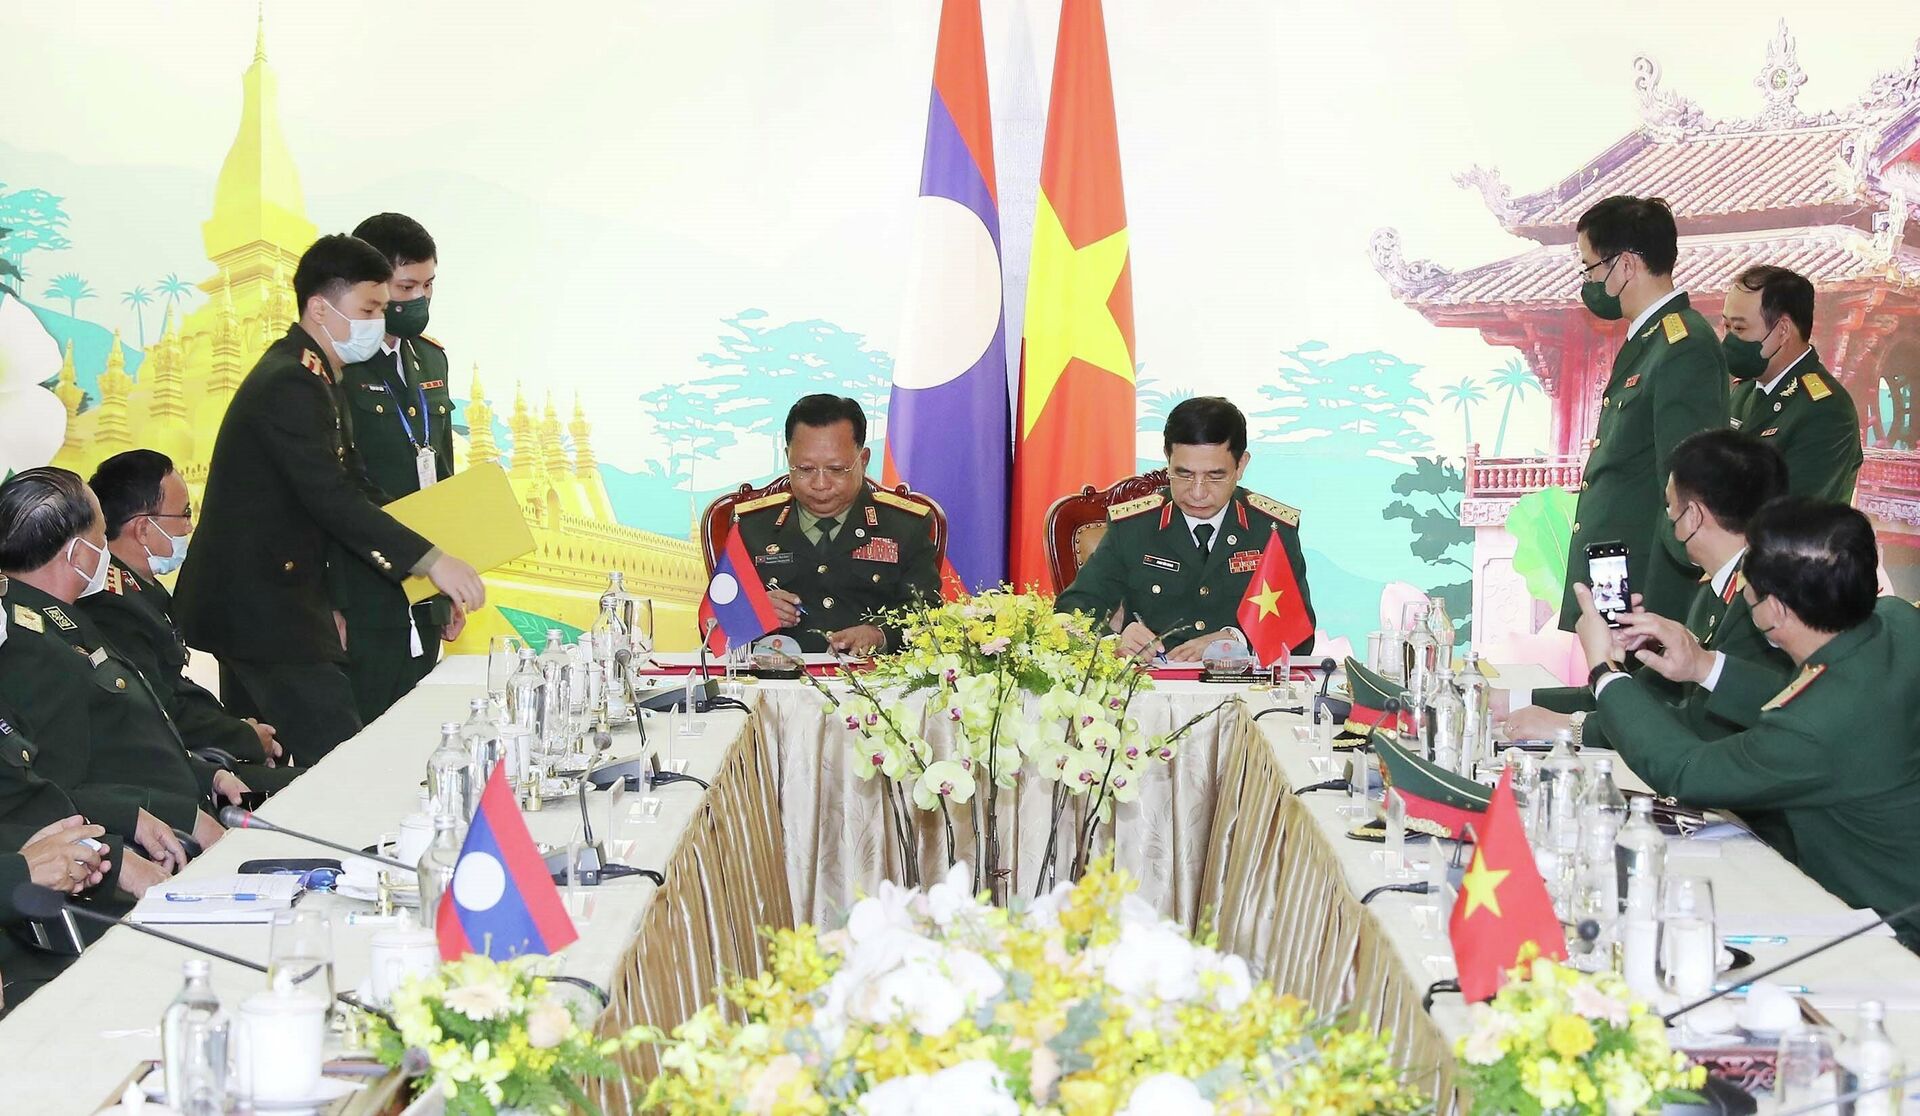 Đại tướng, Bộ trưởng Quốc phòng Phan Văn Giang và Đại tướng, Bộ trưởng Quốc phòng Lào Chansamone Chanyalath thực hiện lễ ký hợp tác giữa Bộ Quốc phòng hai nước - Sputnik Việt Nam, 1920, 13.12.2021